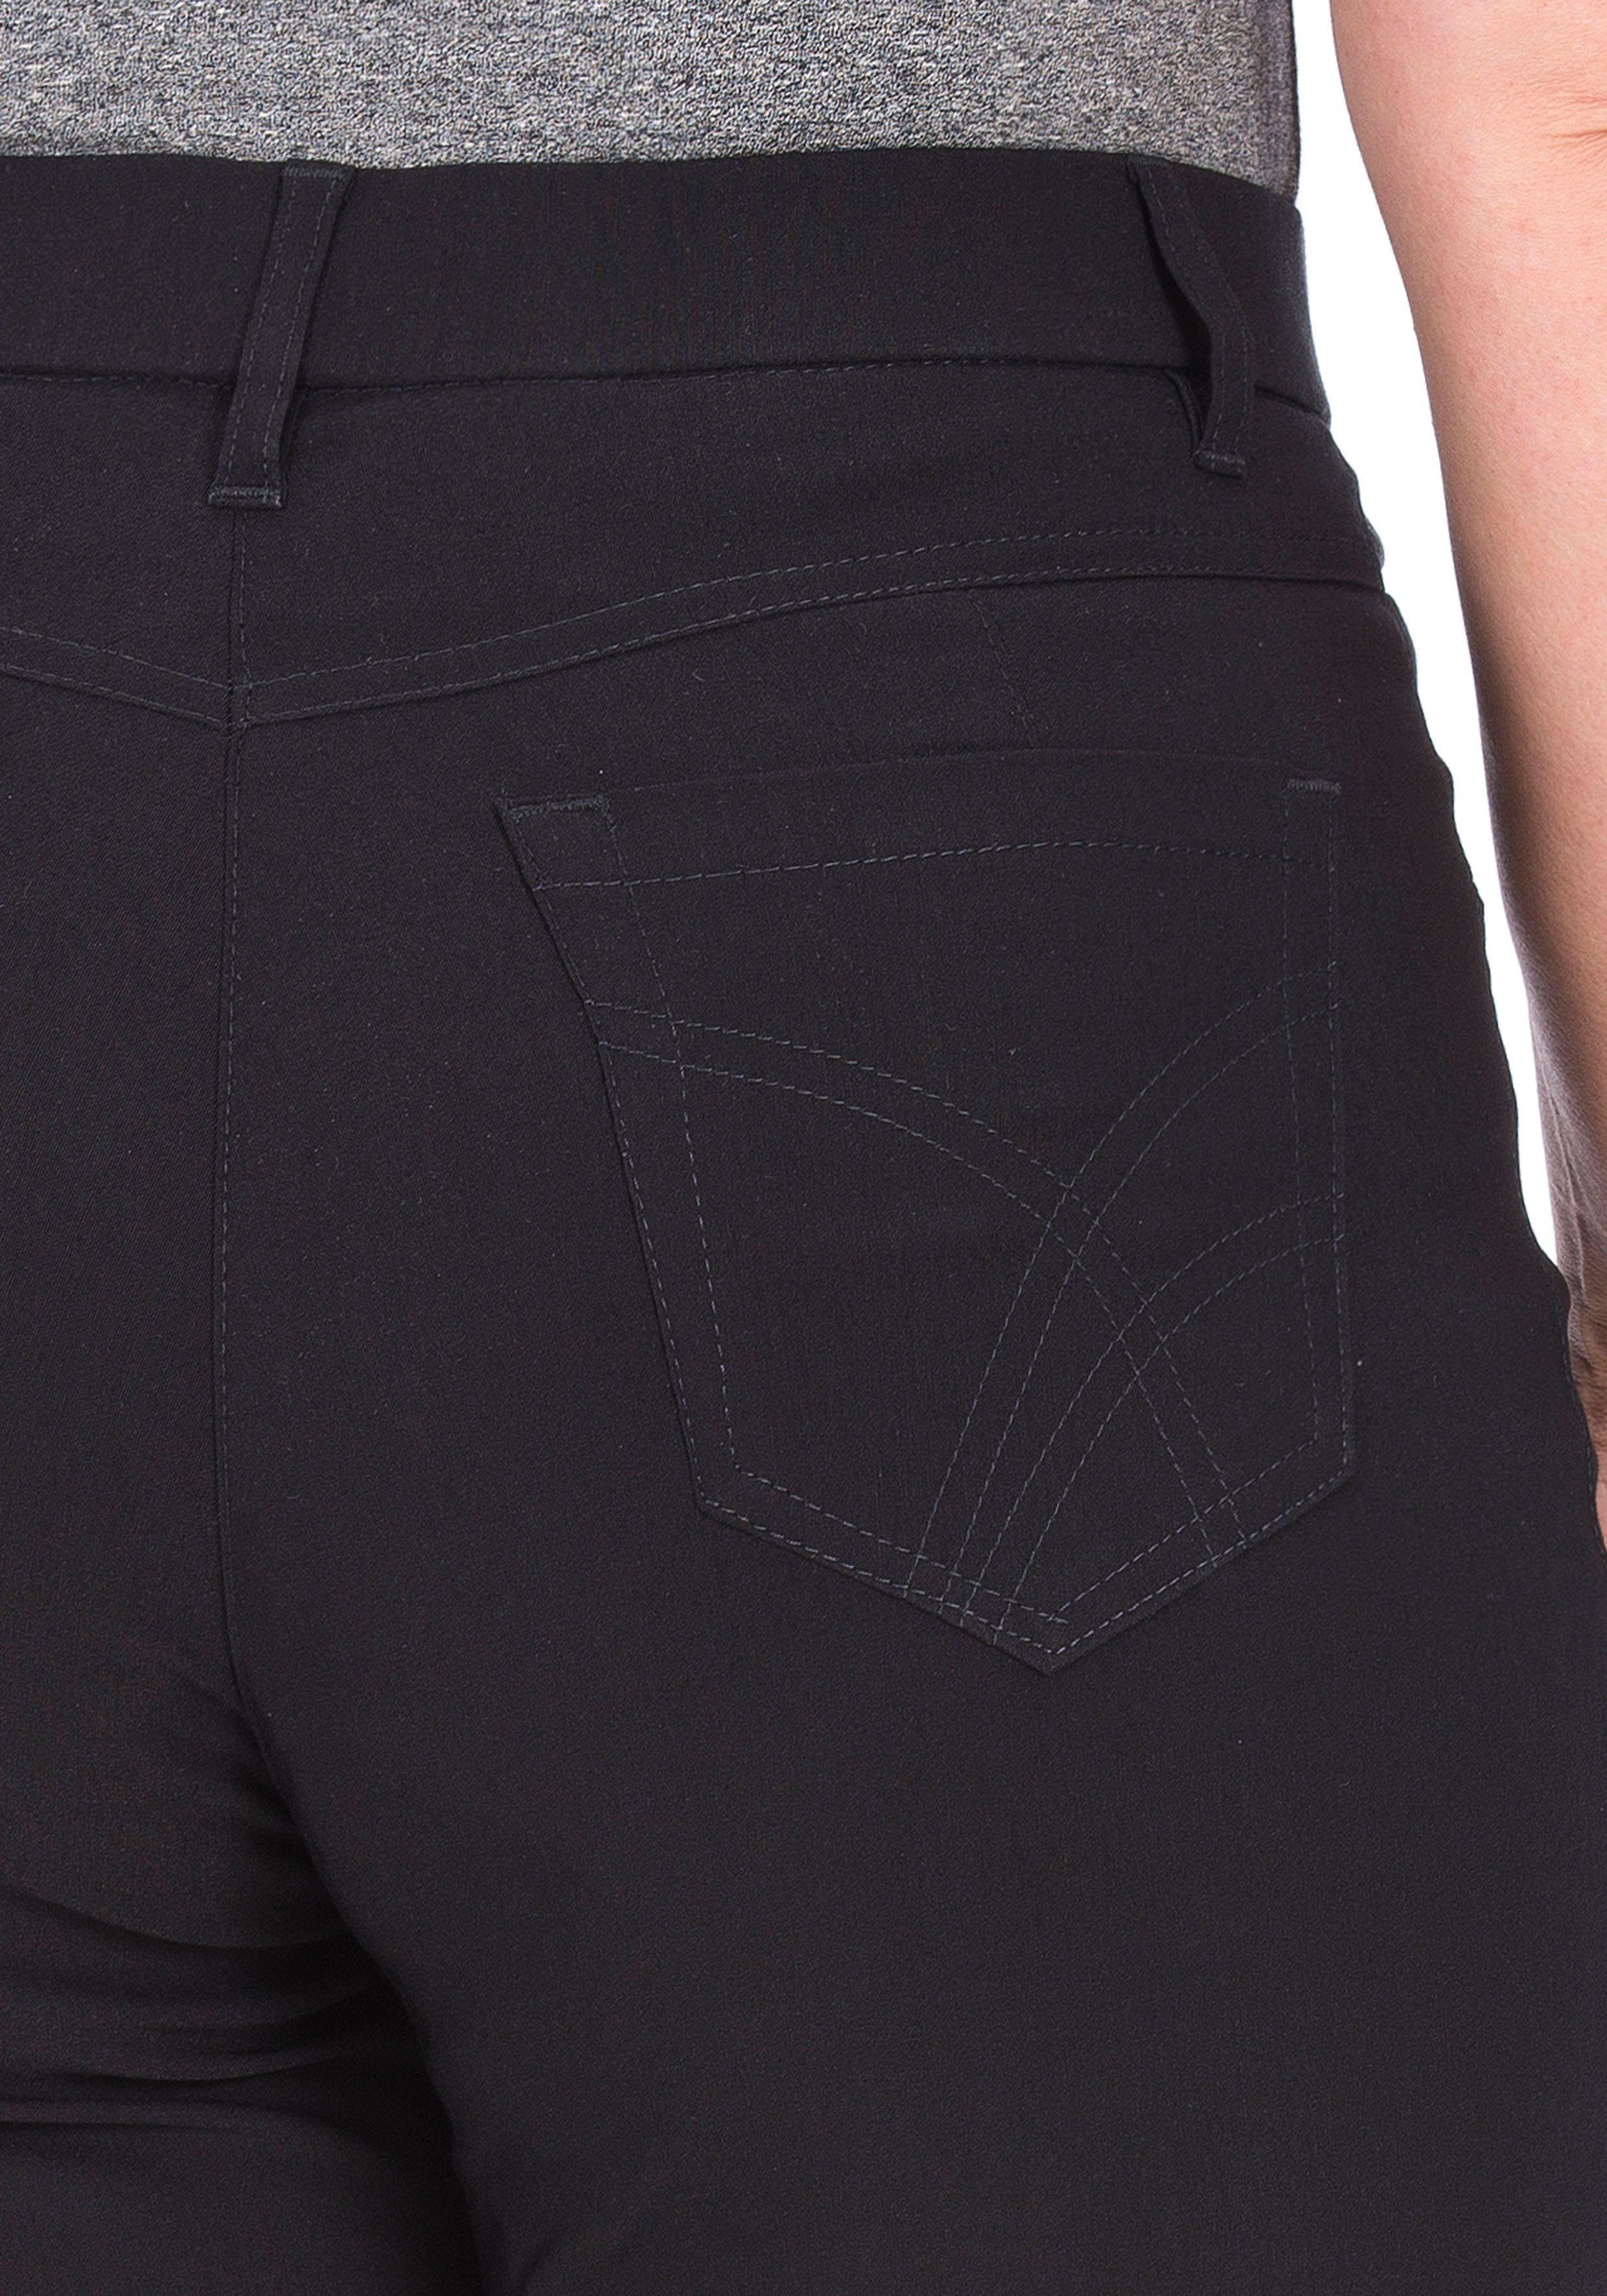 KjBRAND 5-Pocket-Hose Betty Bengaline in bequemer schwarz Form